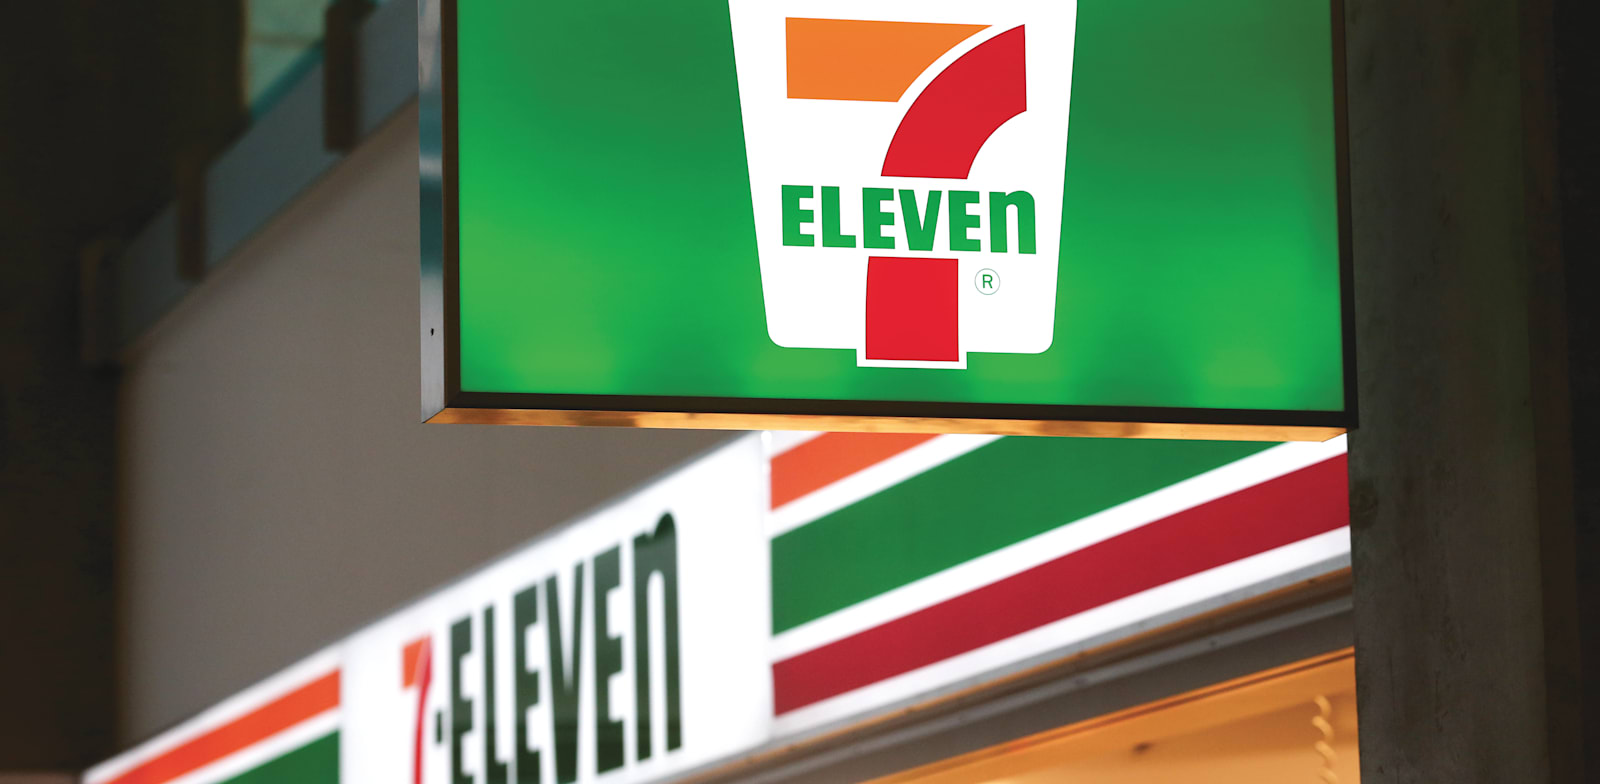 7-Eleven Opens New Evolution Store in Dallas - CStore Decisions